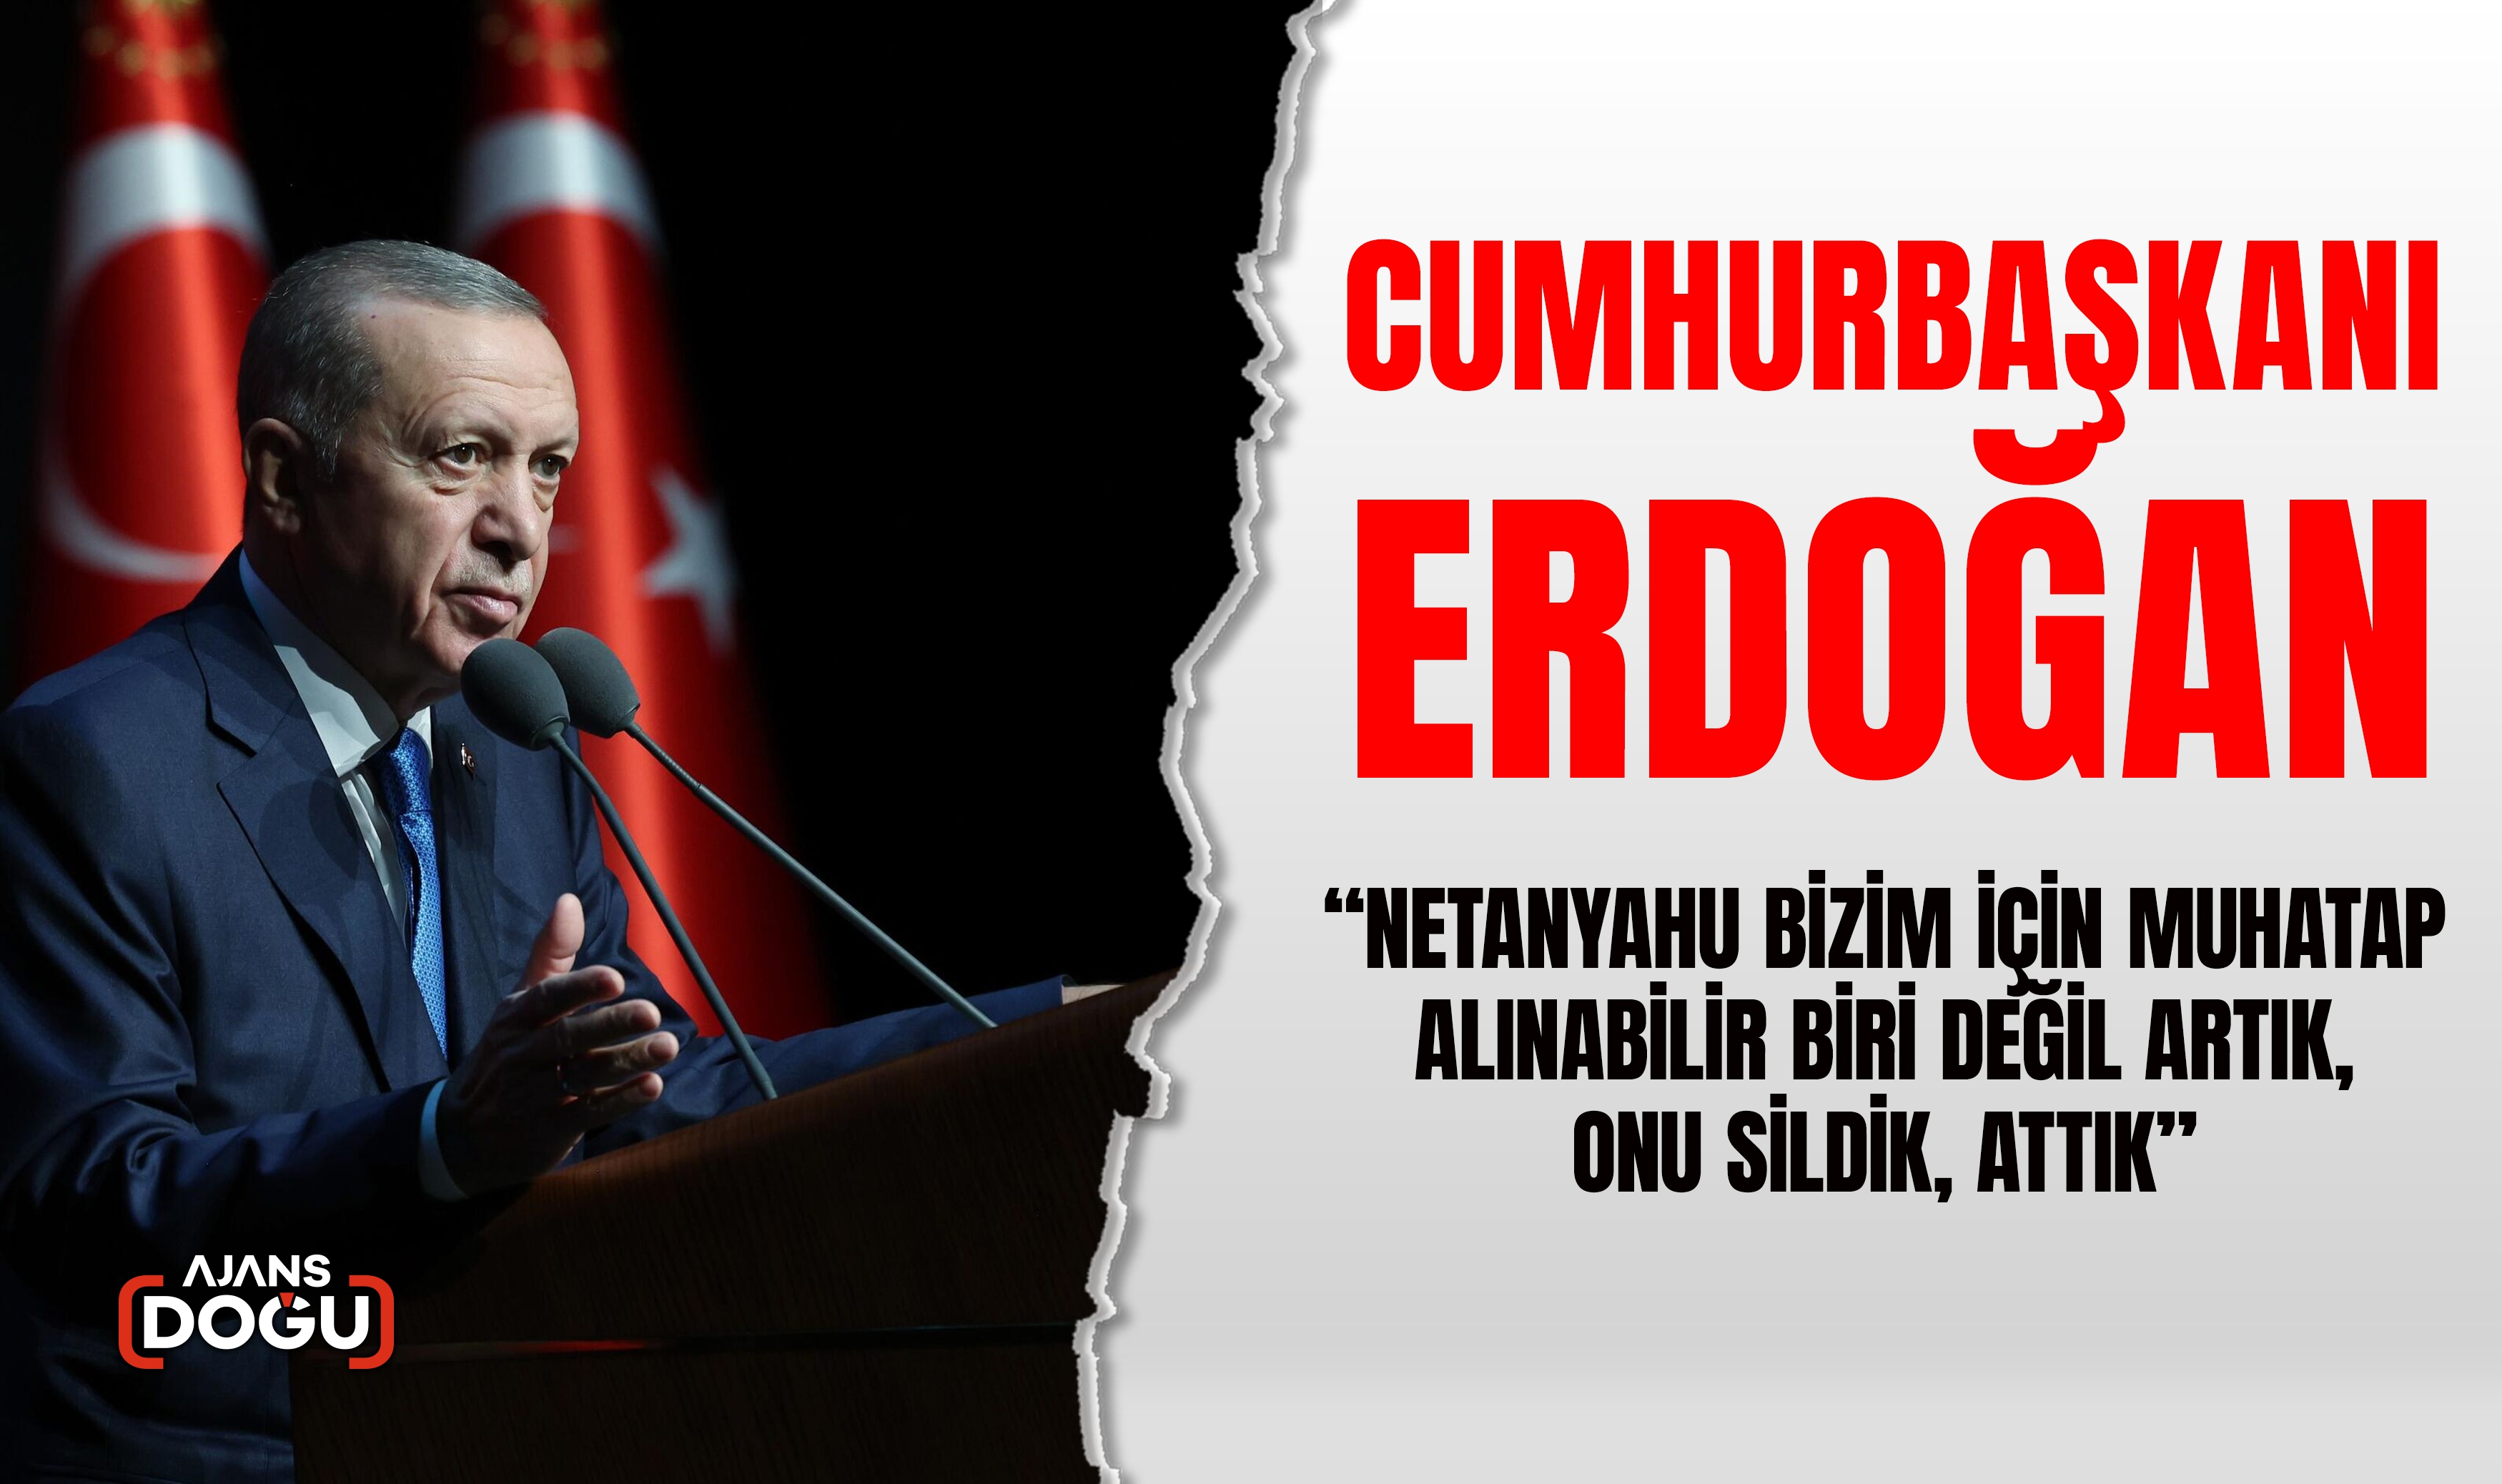 Cumhurbaşkanı Erdoğan:İsrail çok yanlış bir adım attı, geleceğini kararttı diyebilirim